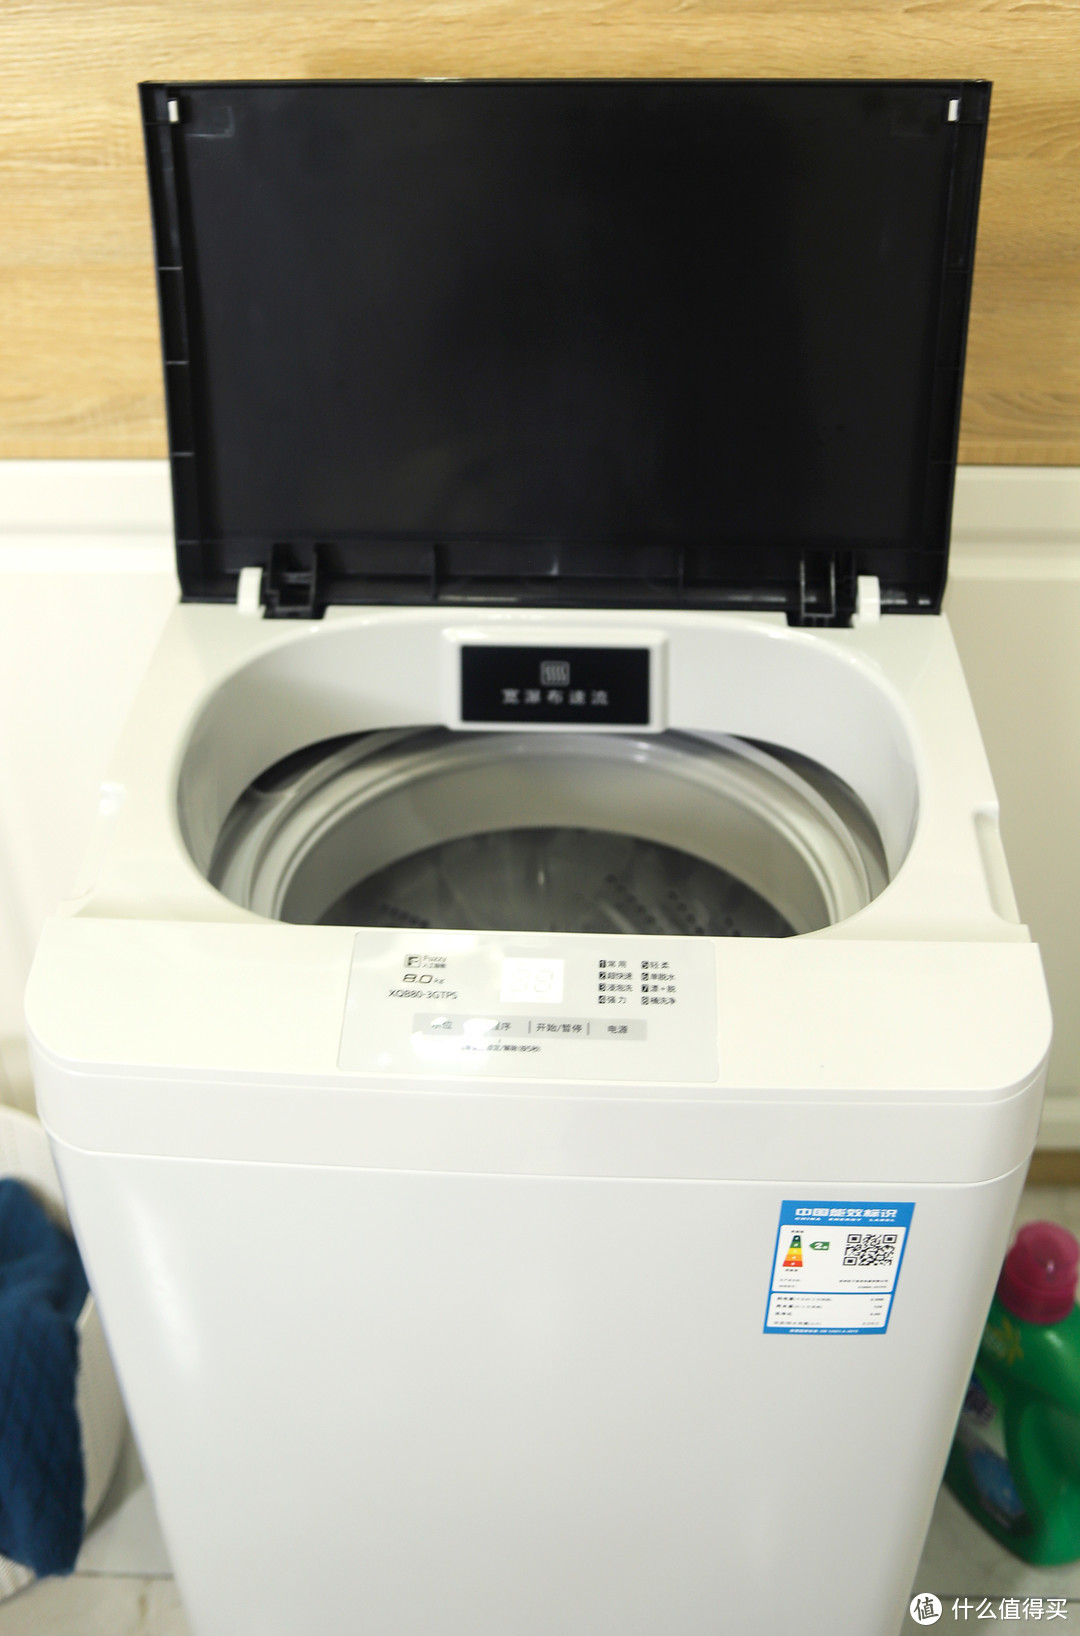 千元档性价比之选 松下 XQB80-3GTPS 波轮洗衣机使用体验